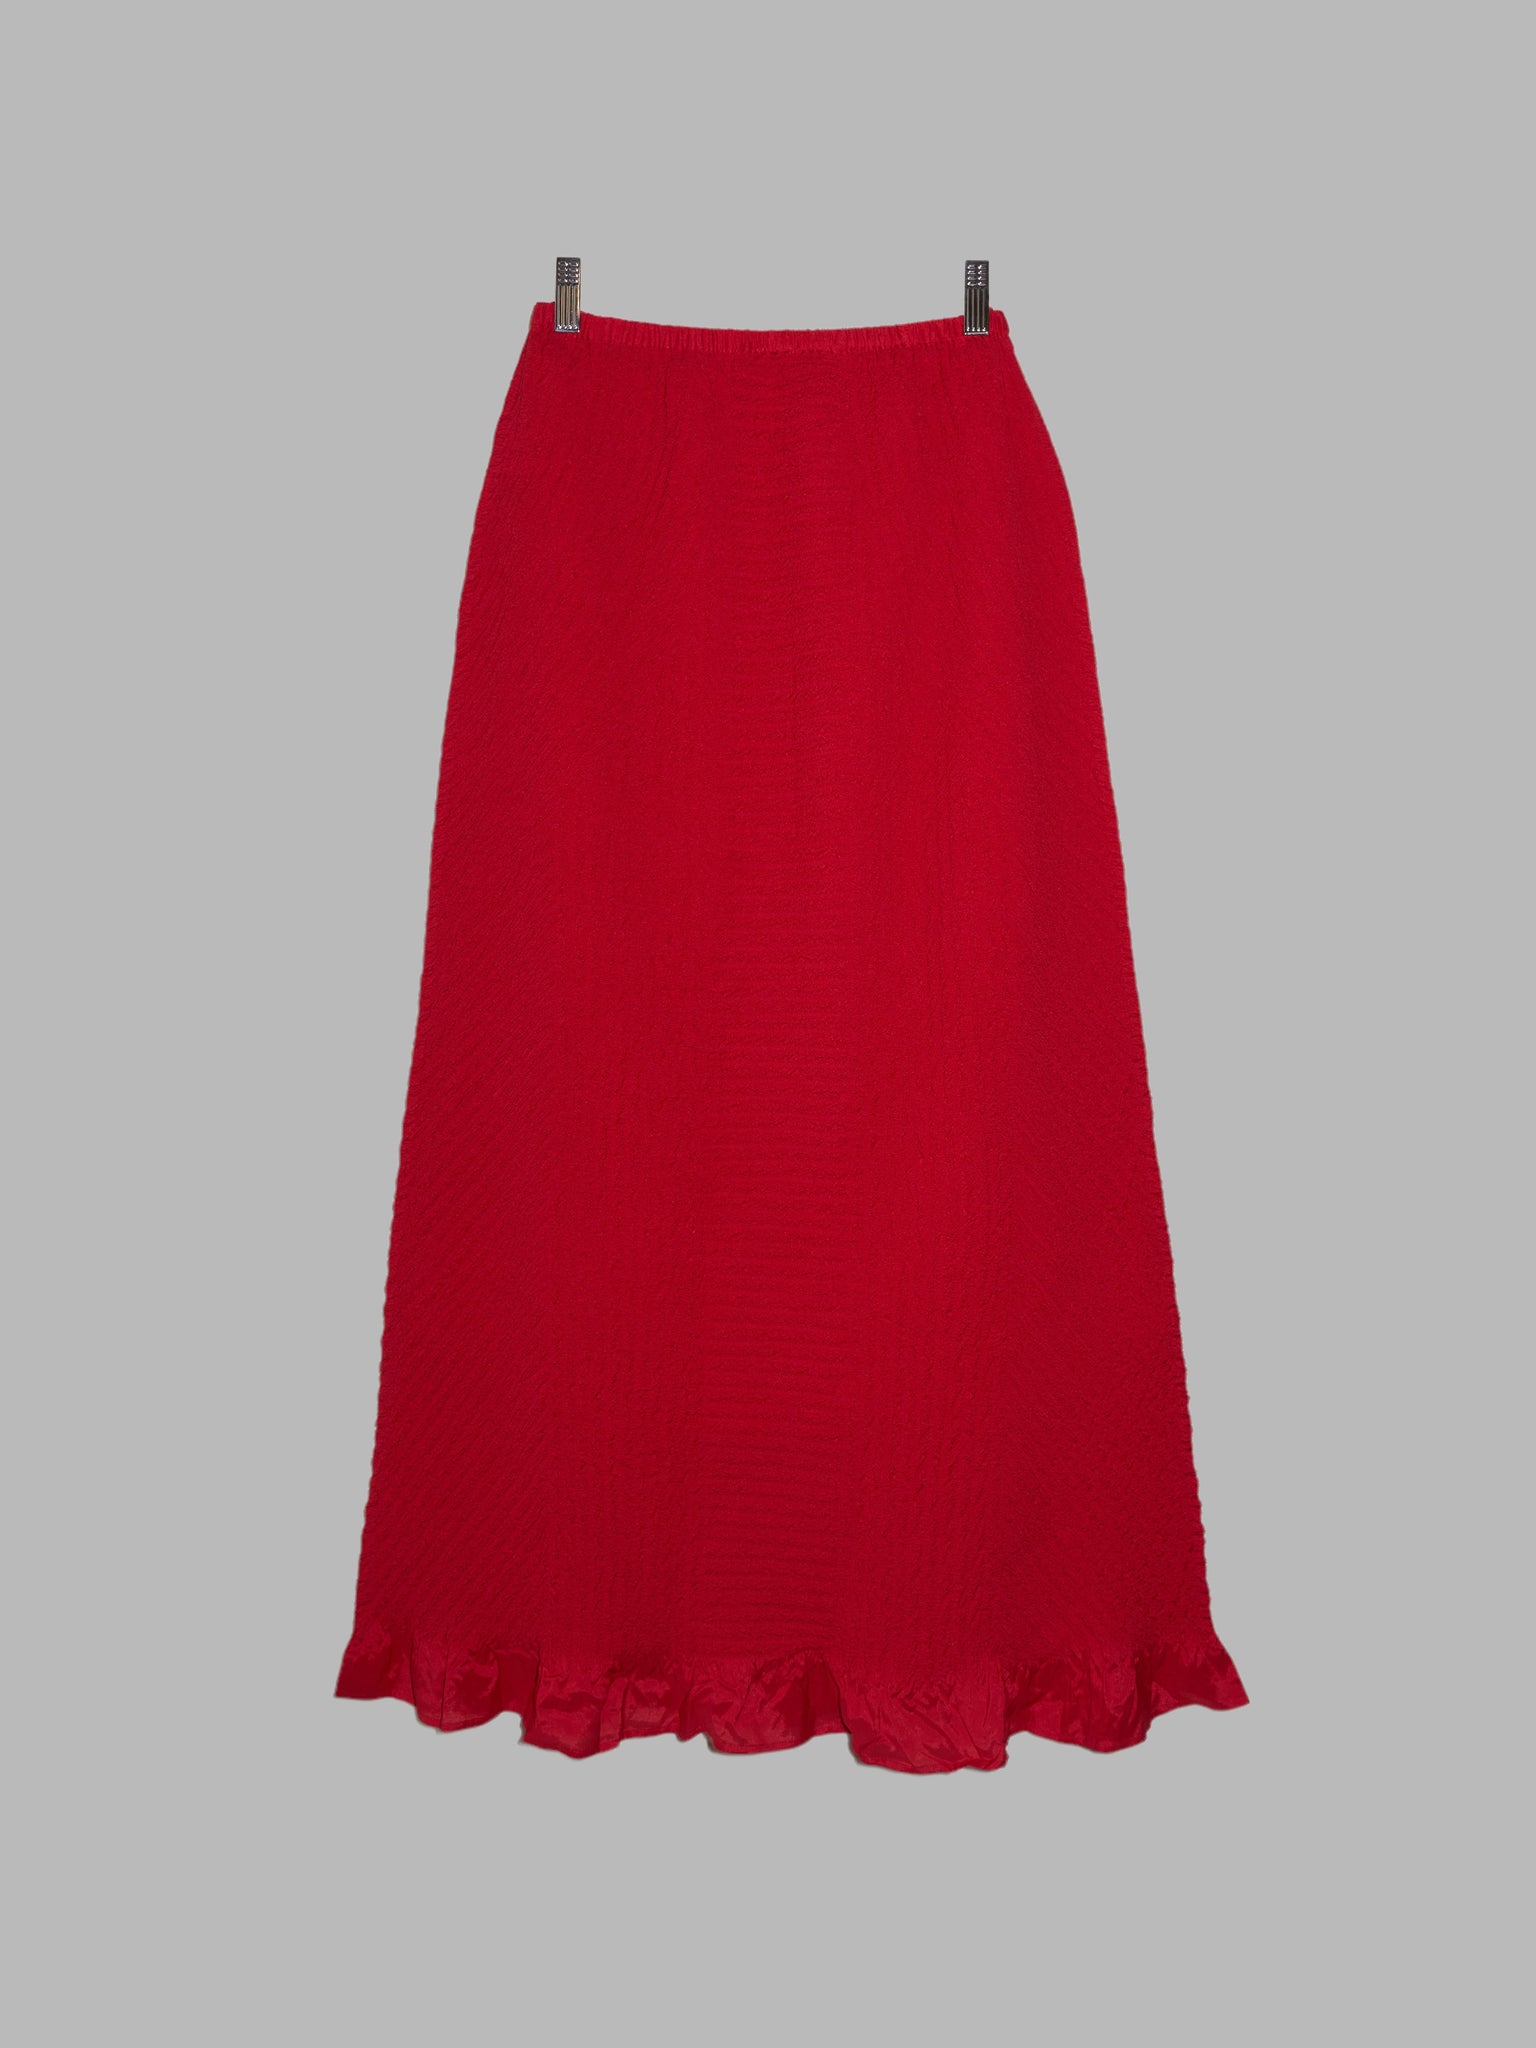 Yoshiki Hishinuma Peplum red wrinkled polyester maxi skirt